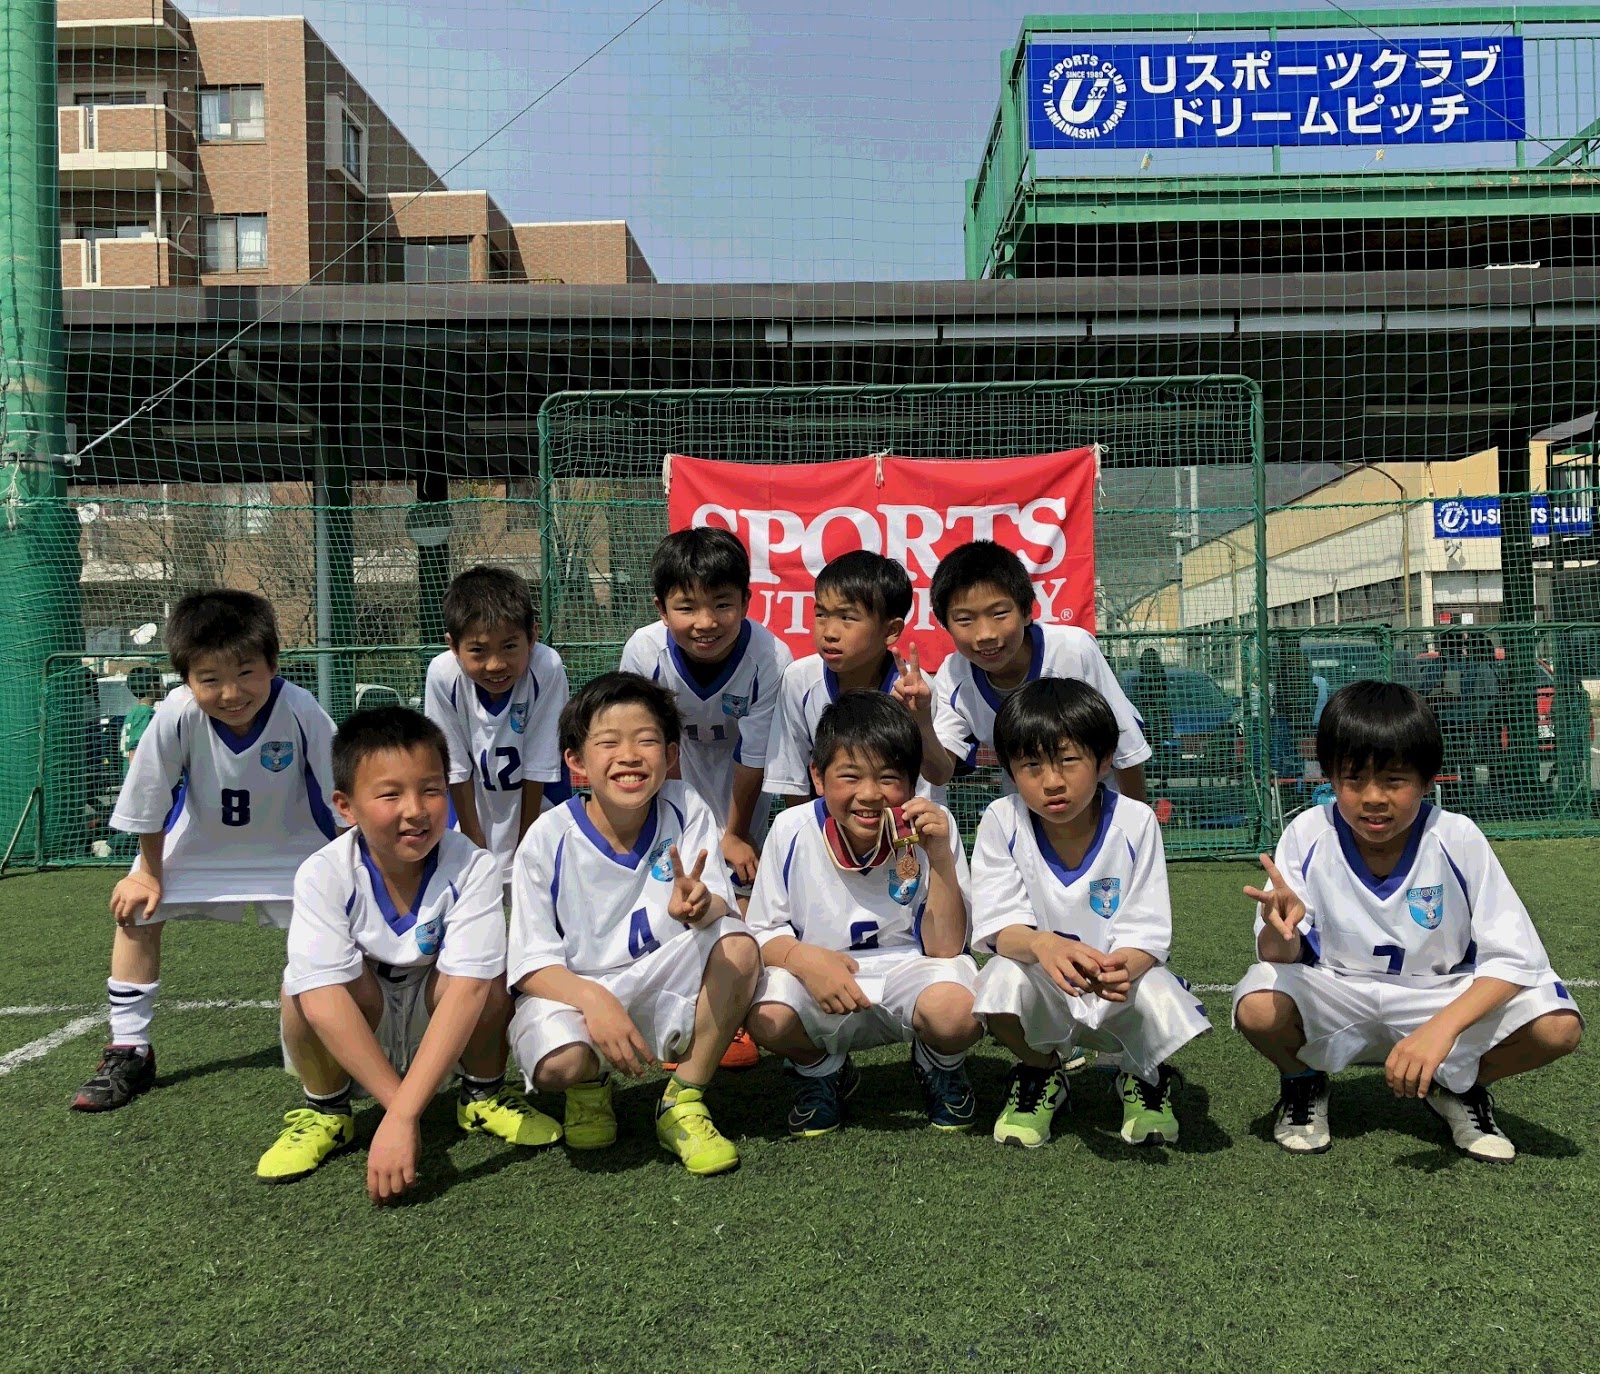 昭和ｆｃ U9 Uスポcup U 9大会 長野県長野市u 12少年サッカークラブ